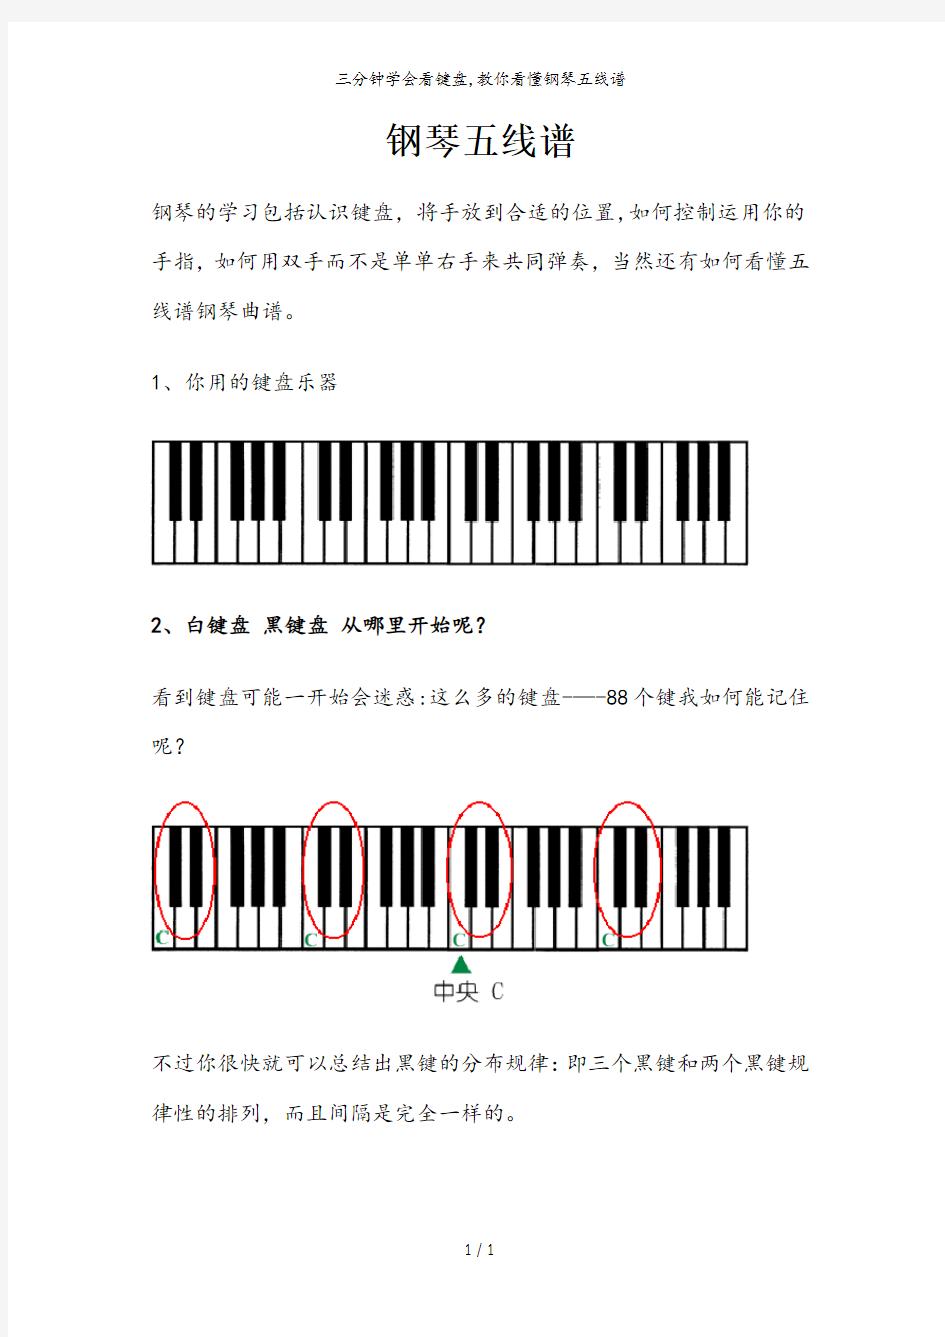 三分钟学会看键盘,教你看懂钢琴五线谱